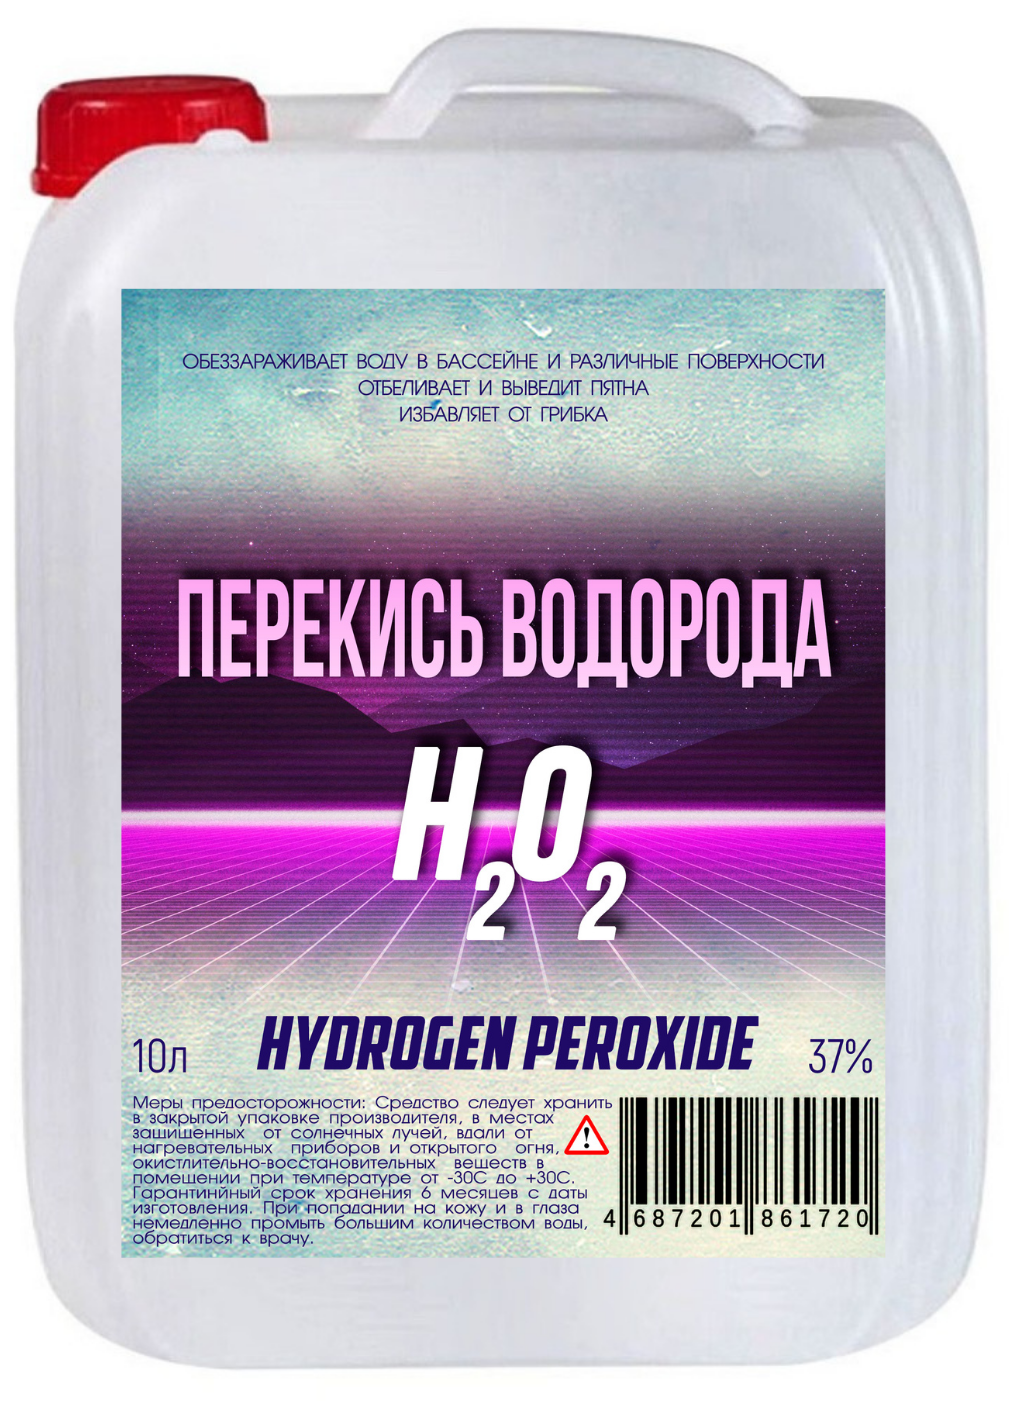 Перекись водорода 37% (пероксид пергидроль активный кислород) дезинфицирующее средство для поверхностей бассейнов саун бань и быта 10 л.